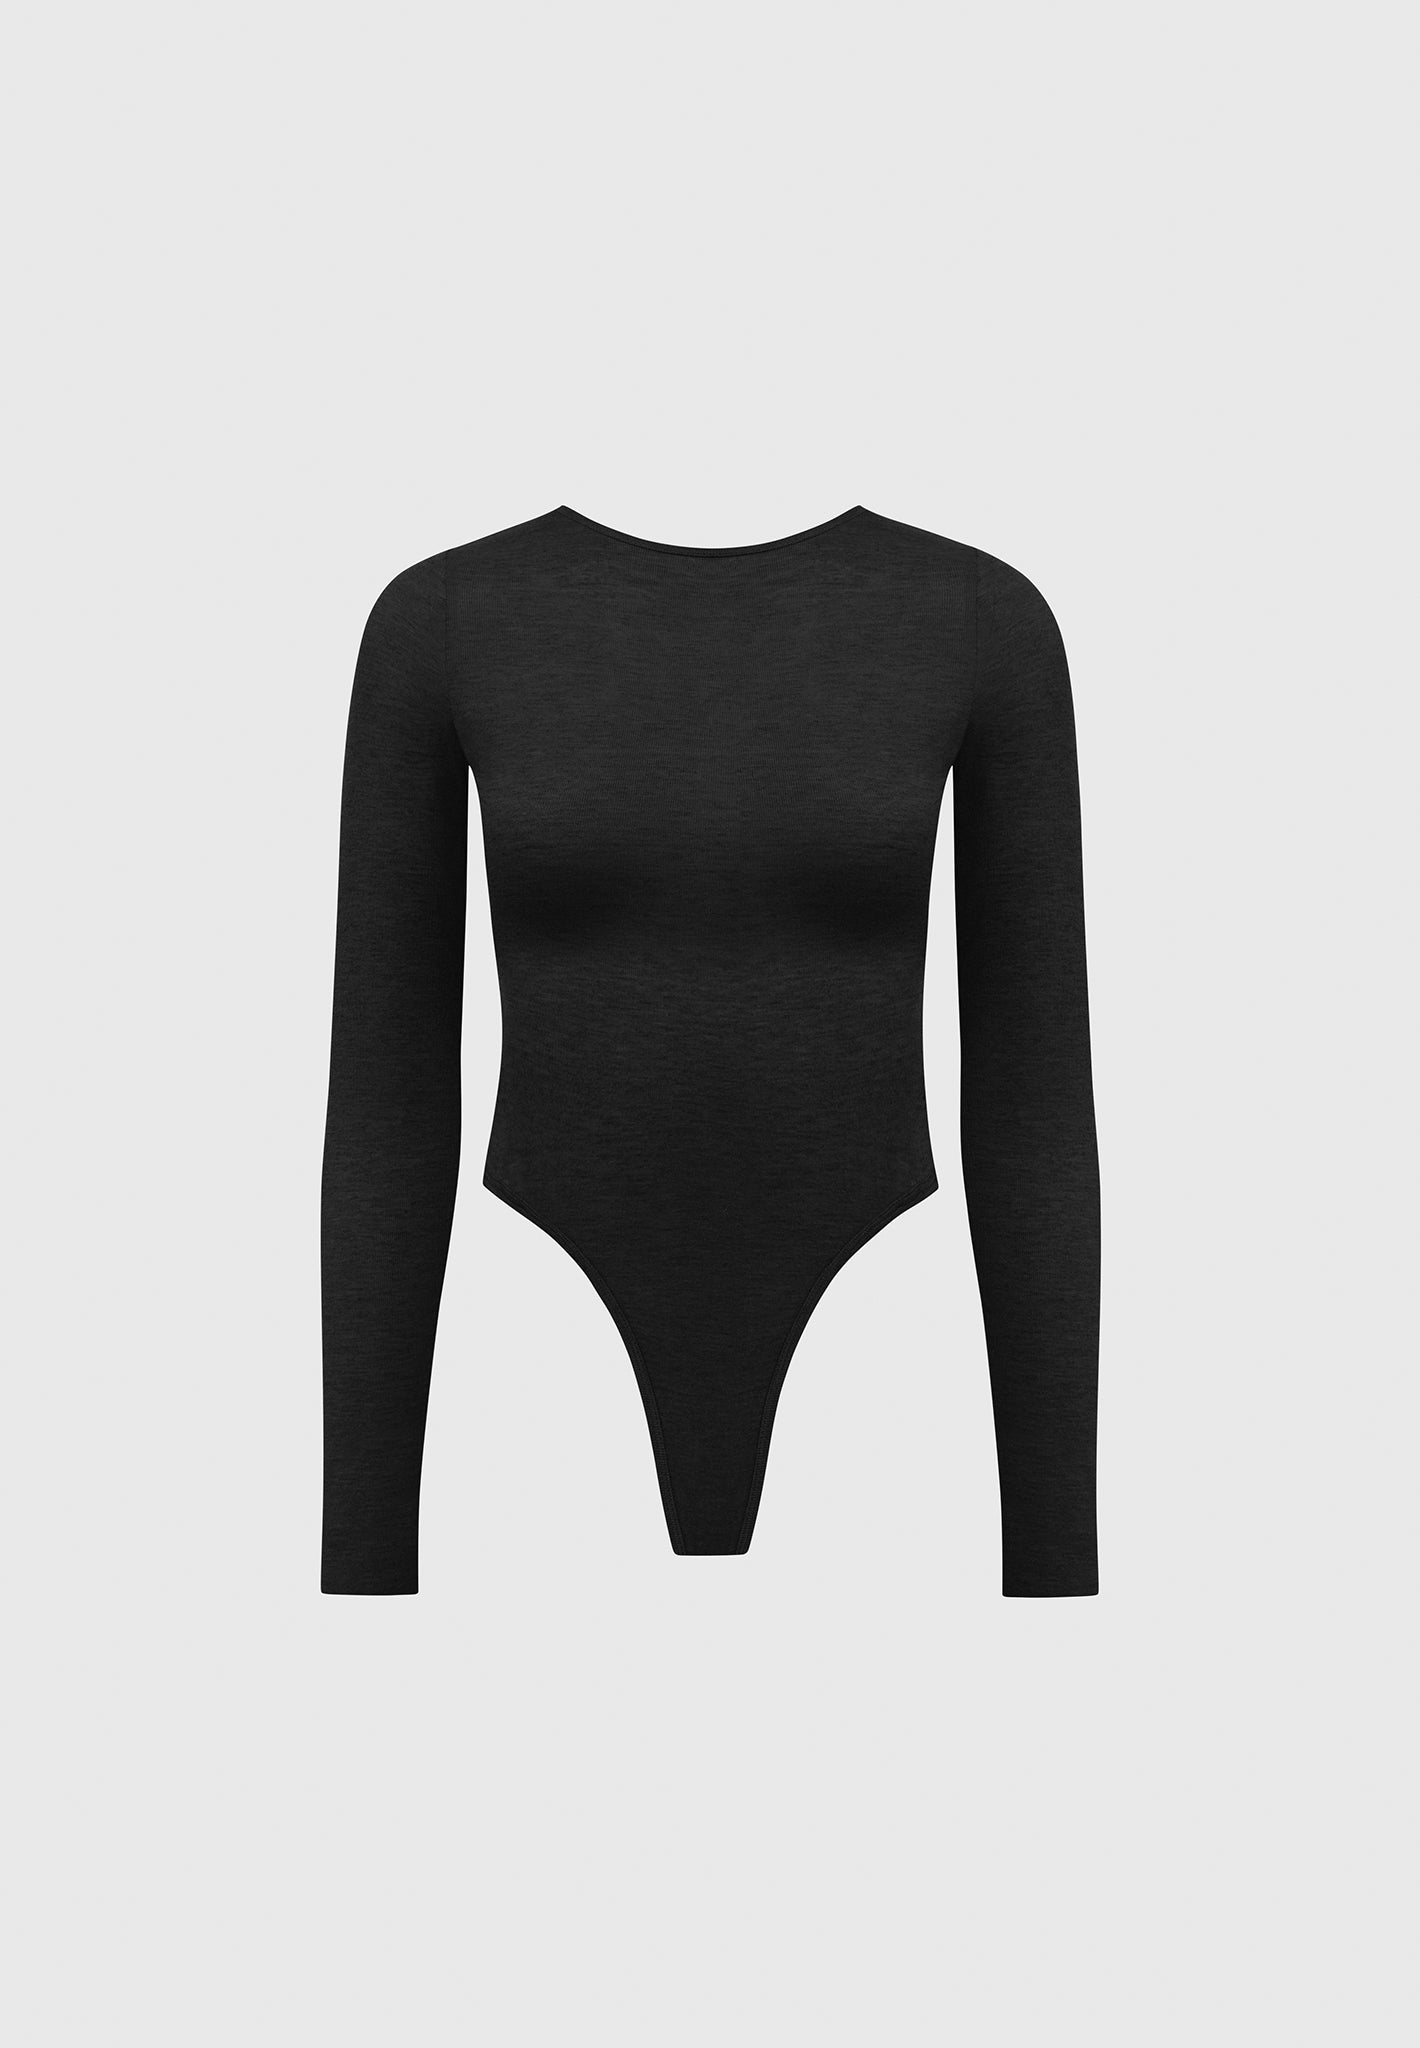 Athena Bodysuit - Black Slinky  Black bodysuit, Slinky, Black pants